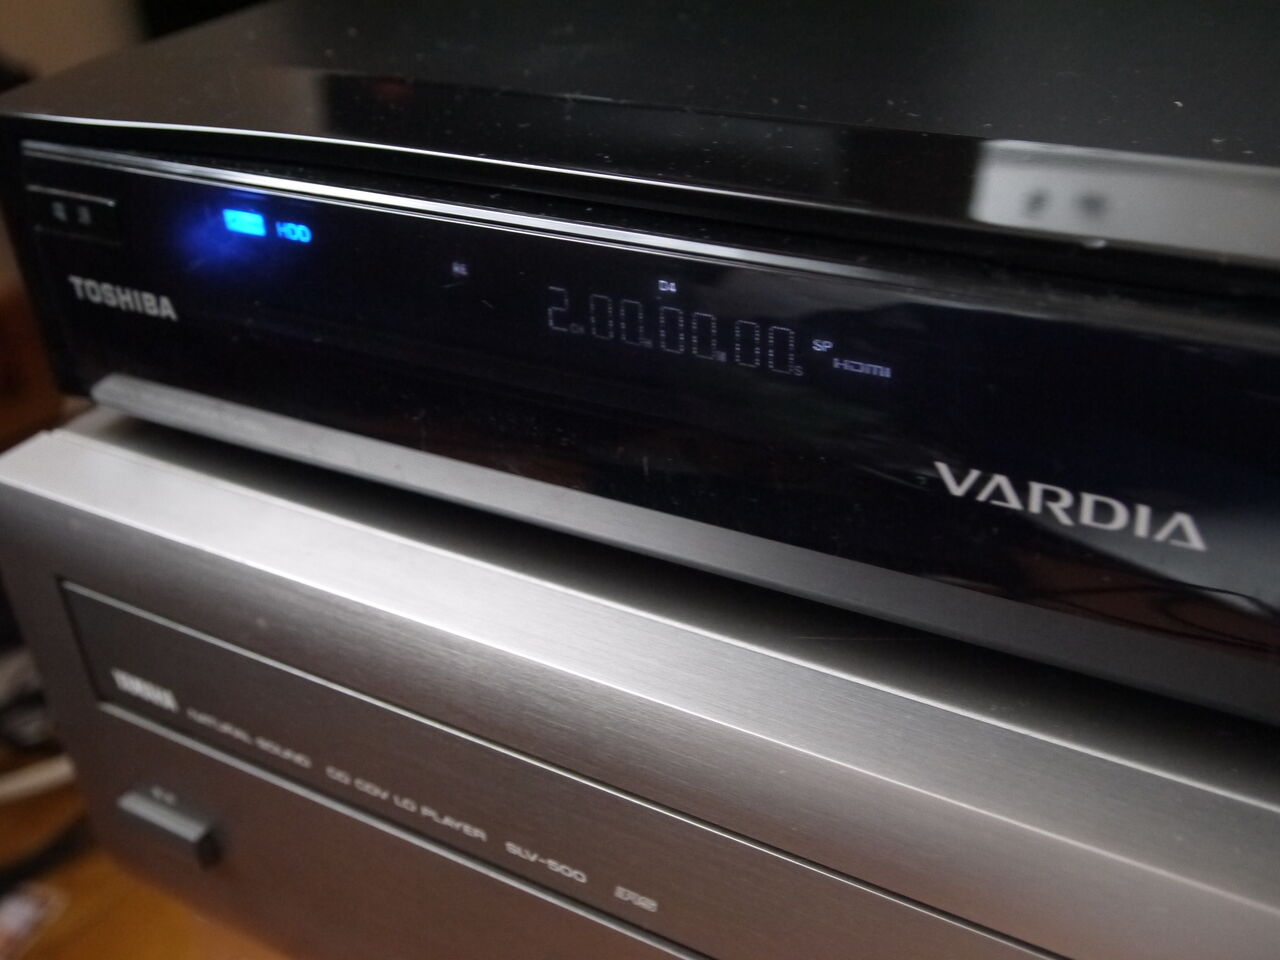 【新作からSALEアイテム等お得な商品満載】 2TBに換装 東芝 VARDIA DVDレコーダー RD-S303 徹底清掃 DVDレコーダー